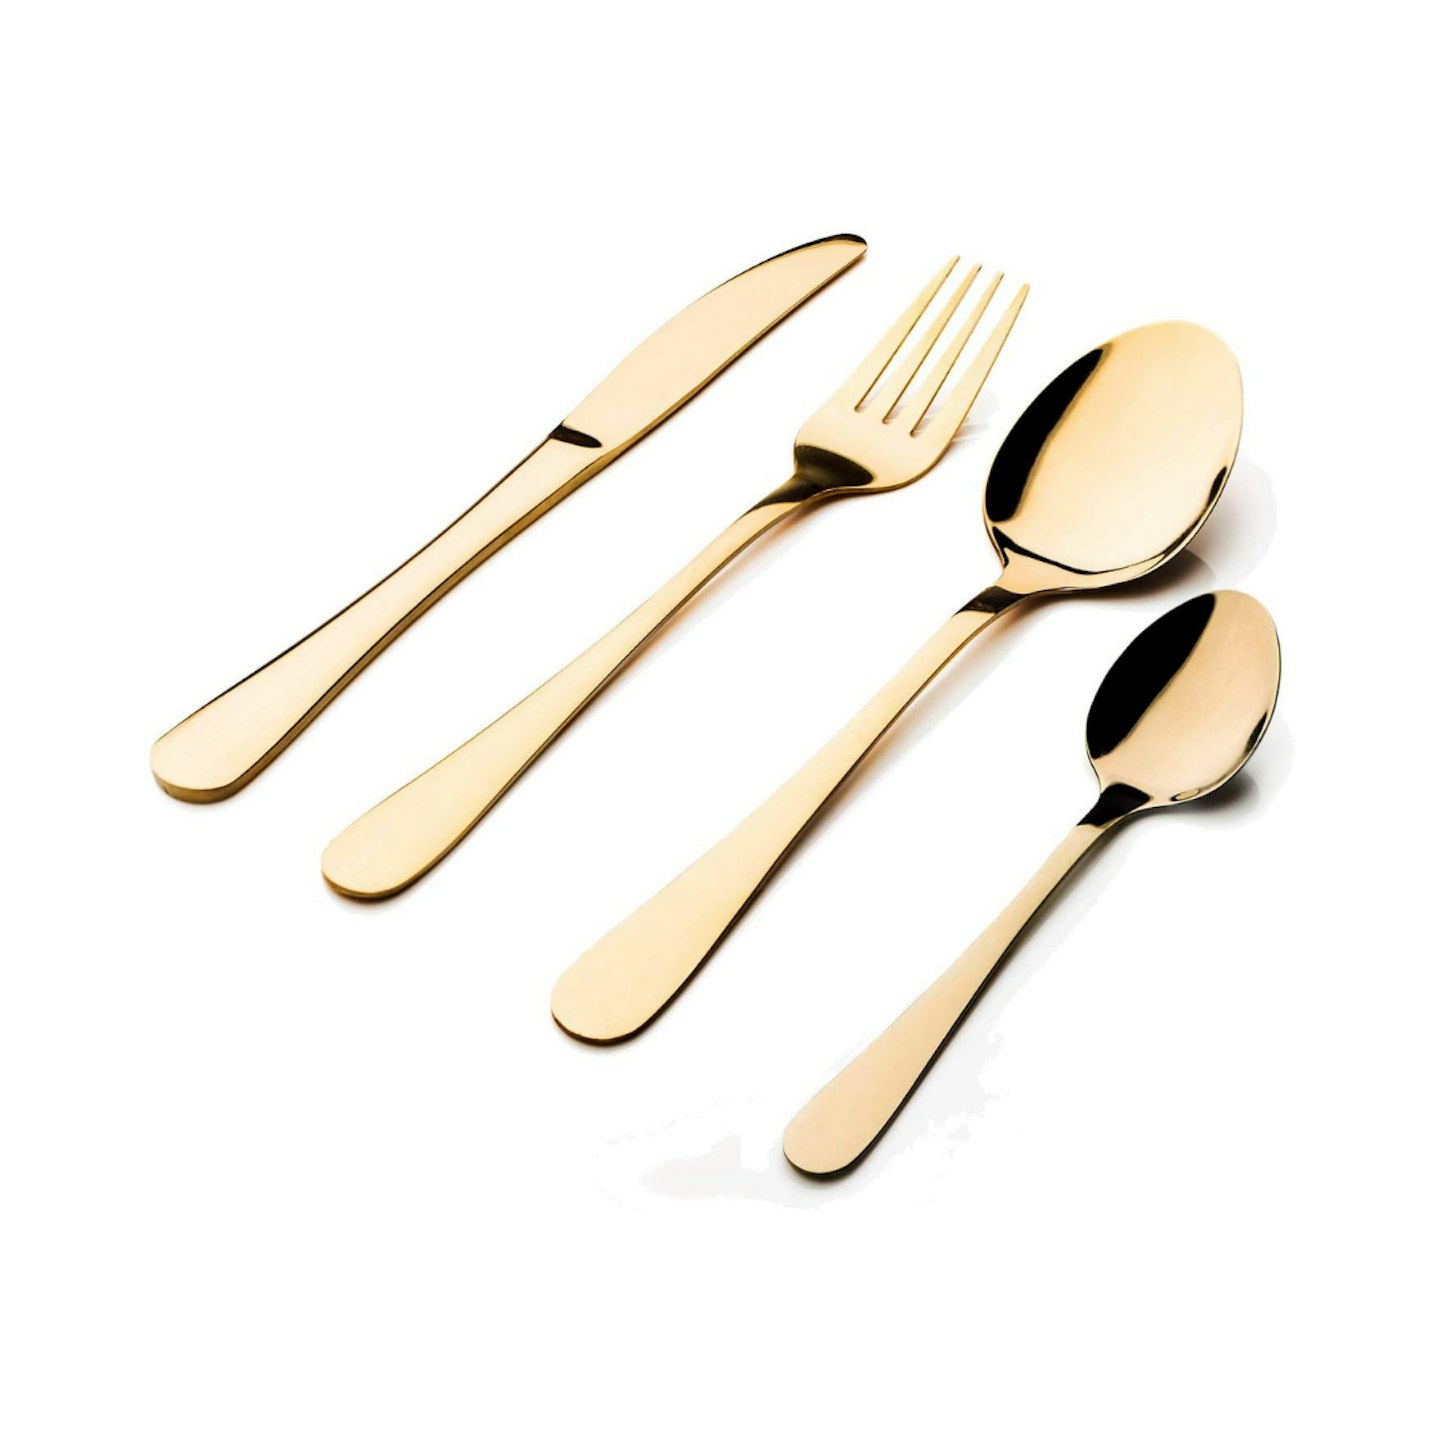 gold kitchen accessories